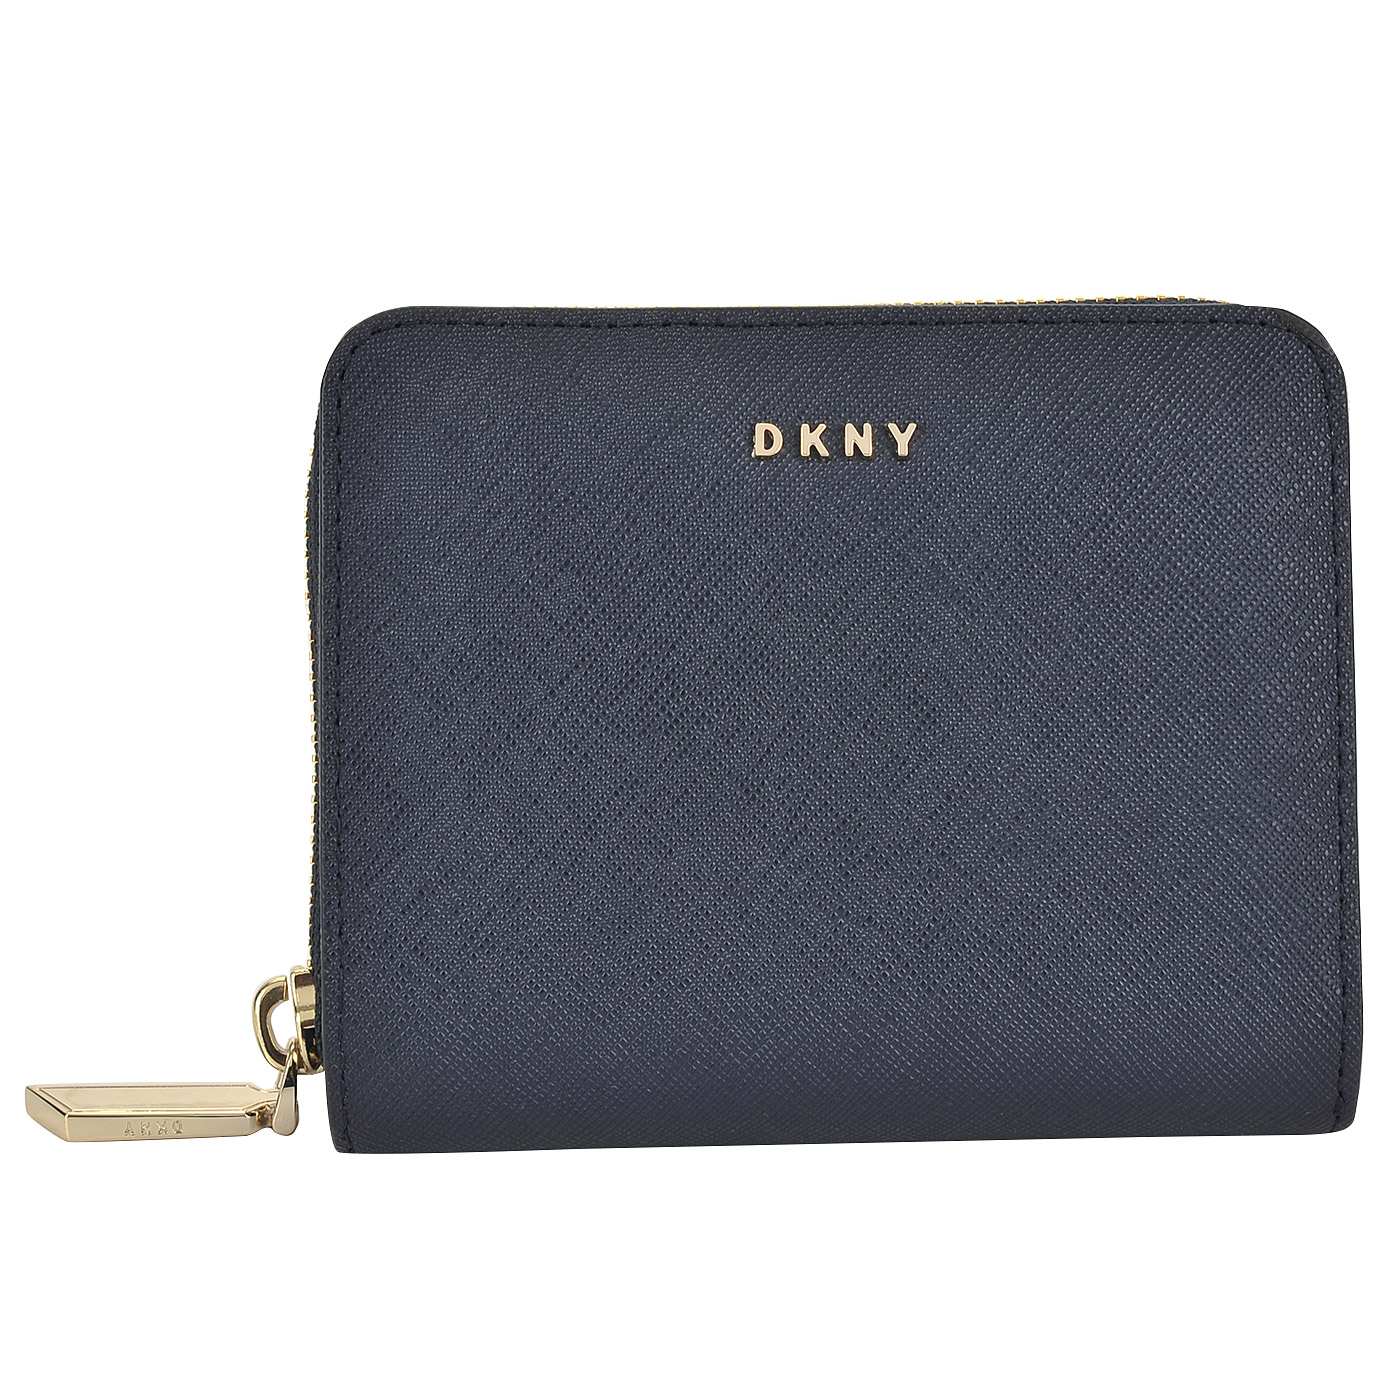 Компактное женское портмоне из сафьяновой синей кожи DKNY